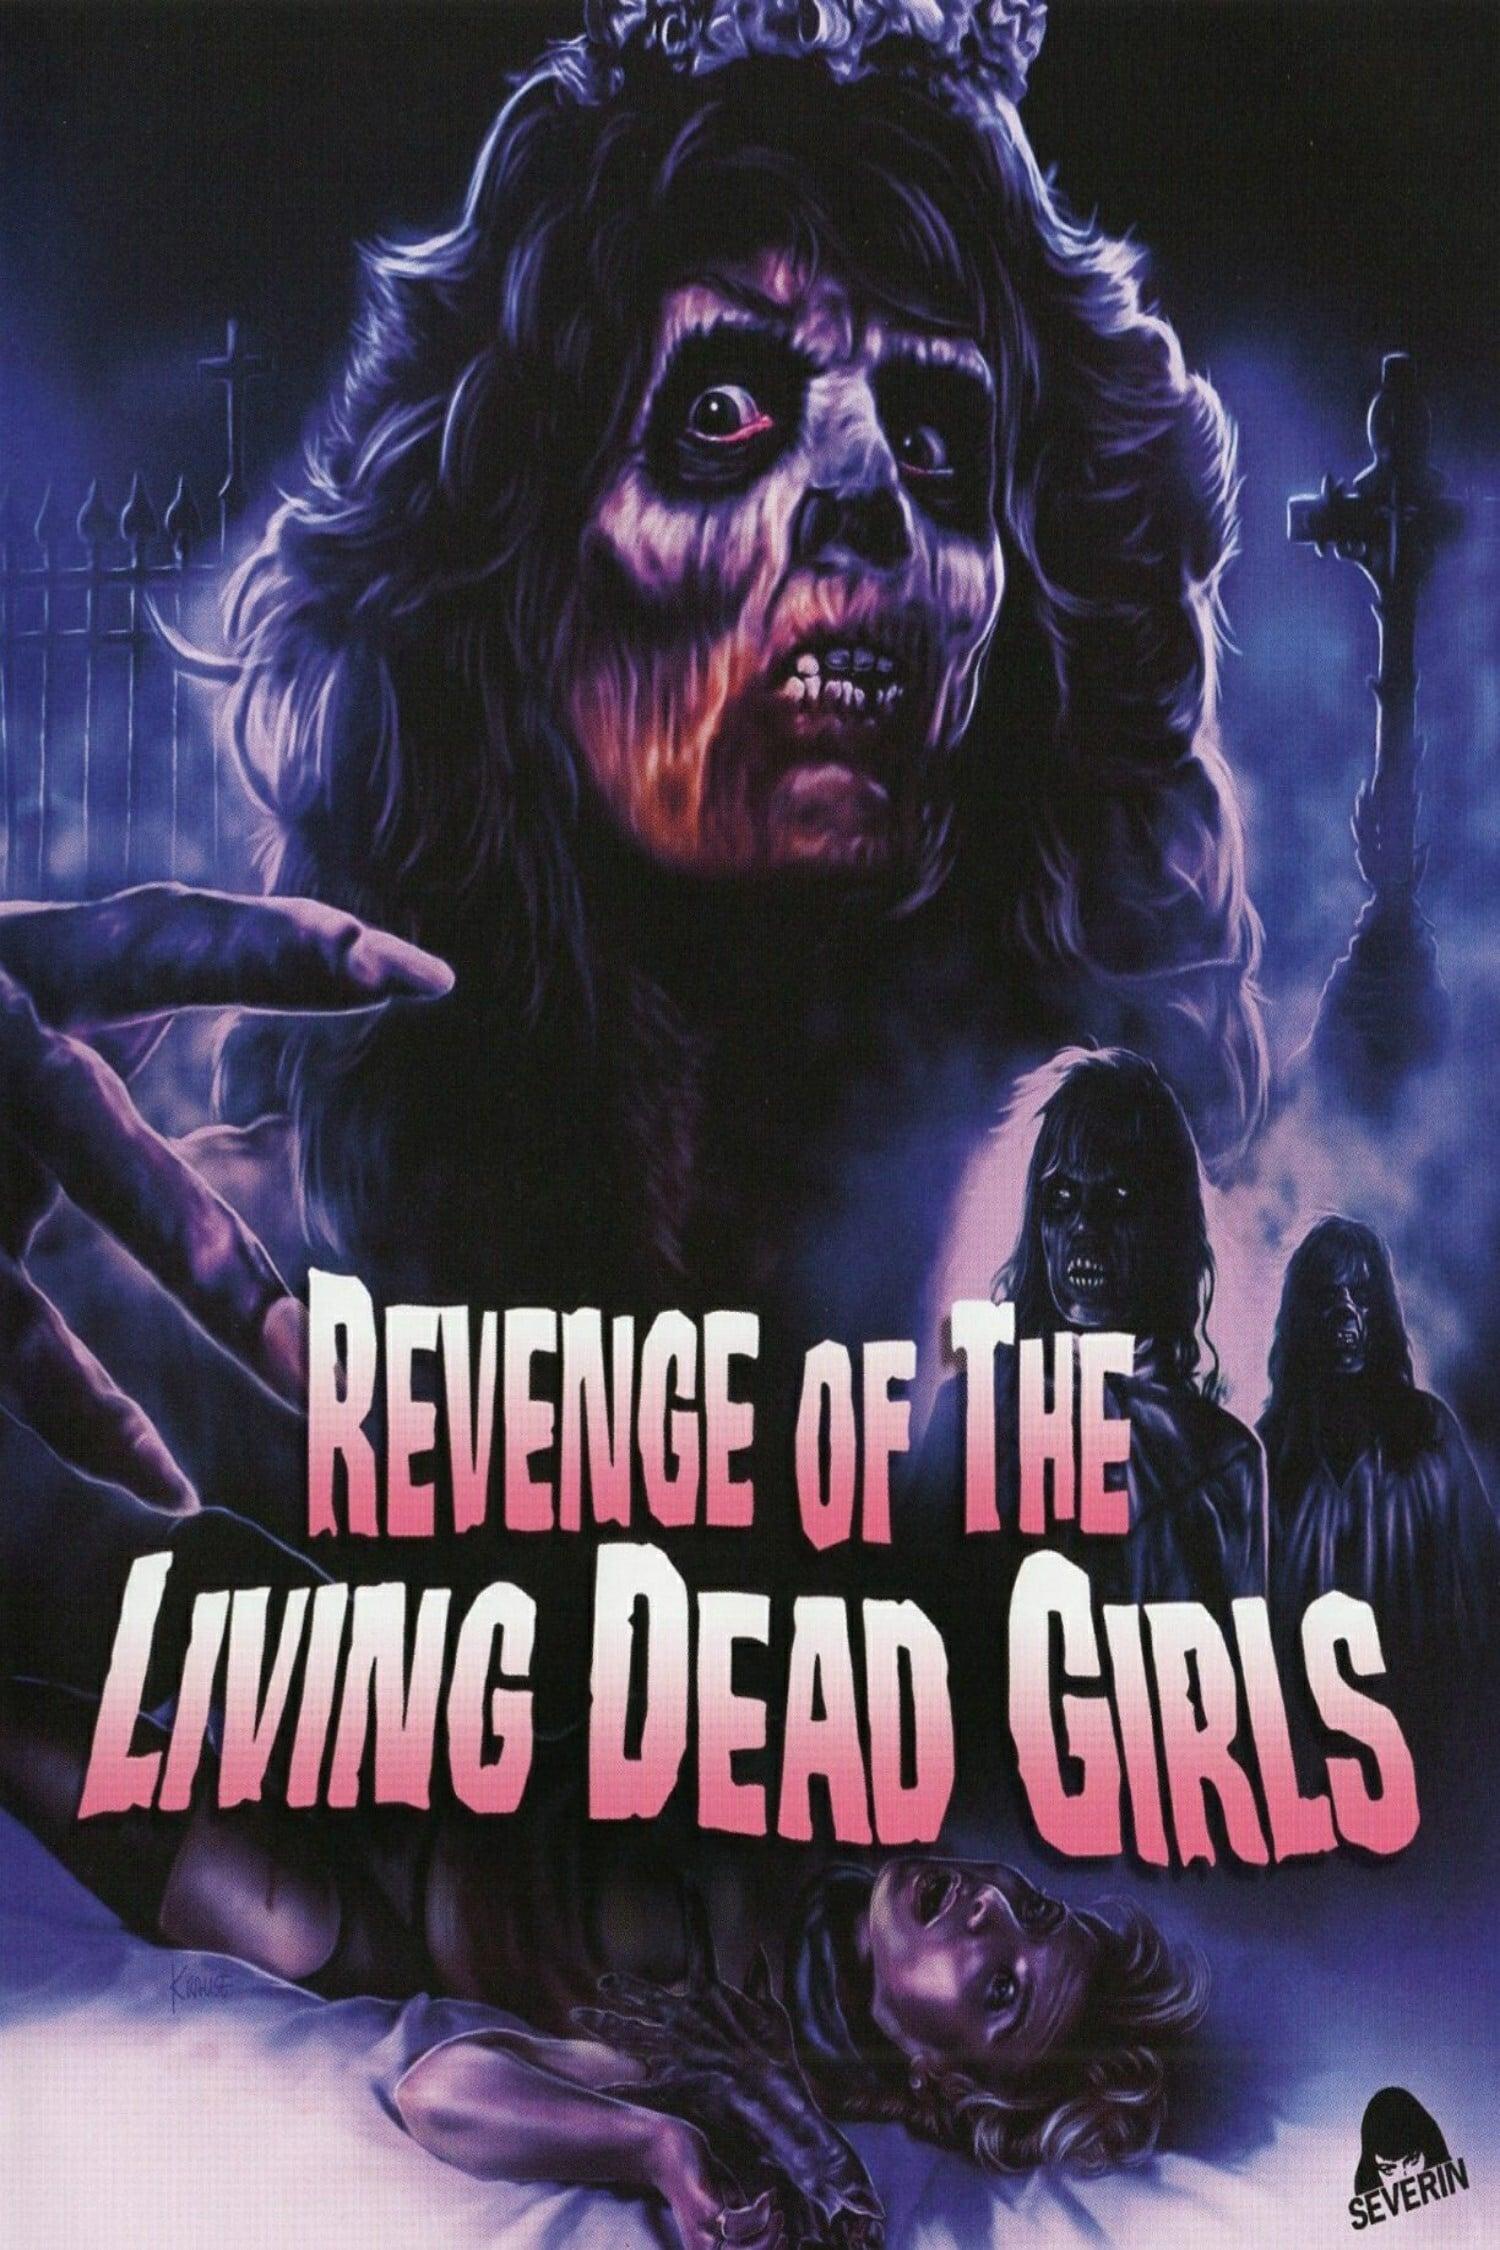 The Revenge of the Living Dead Girls poster